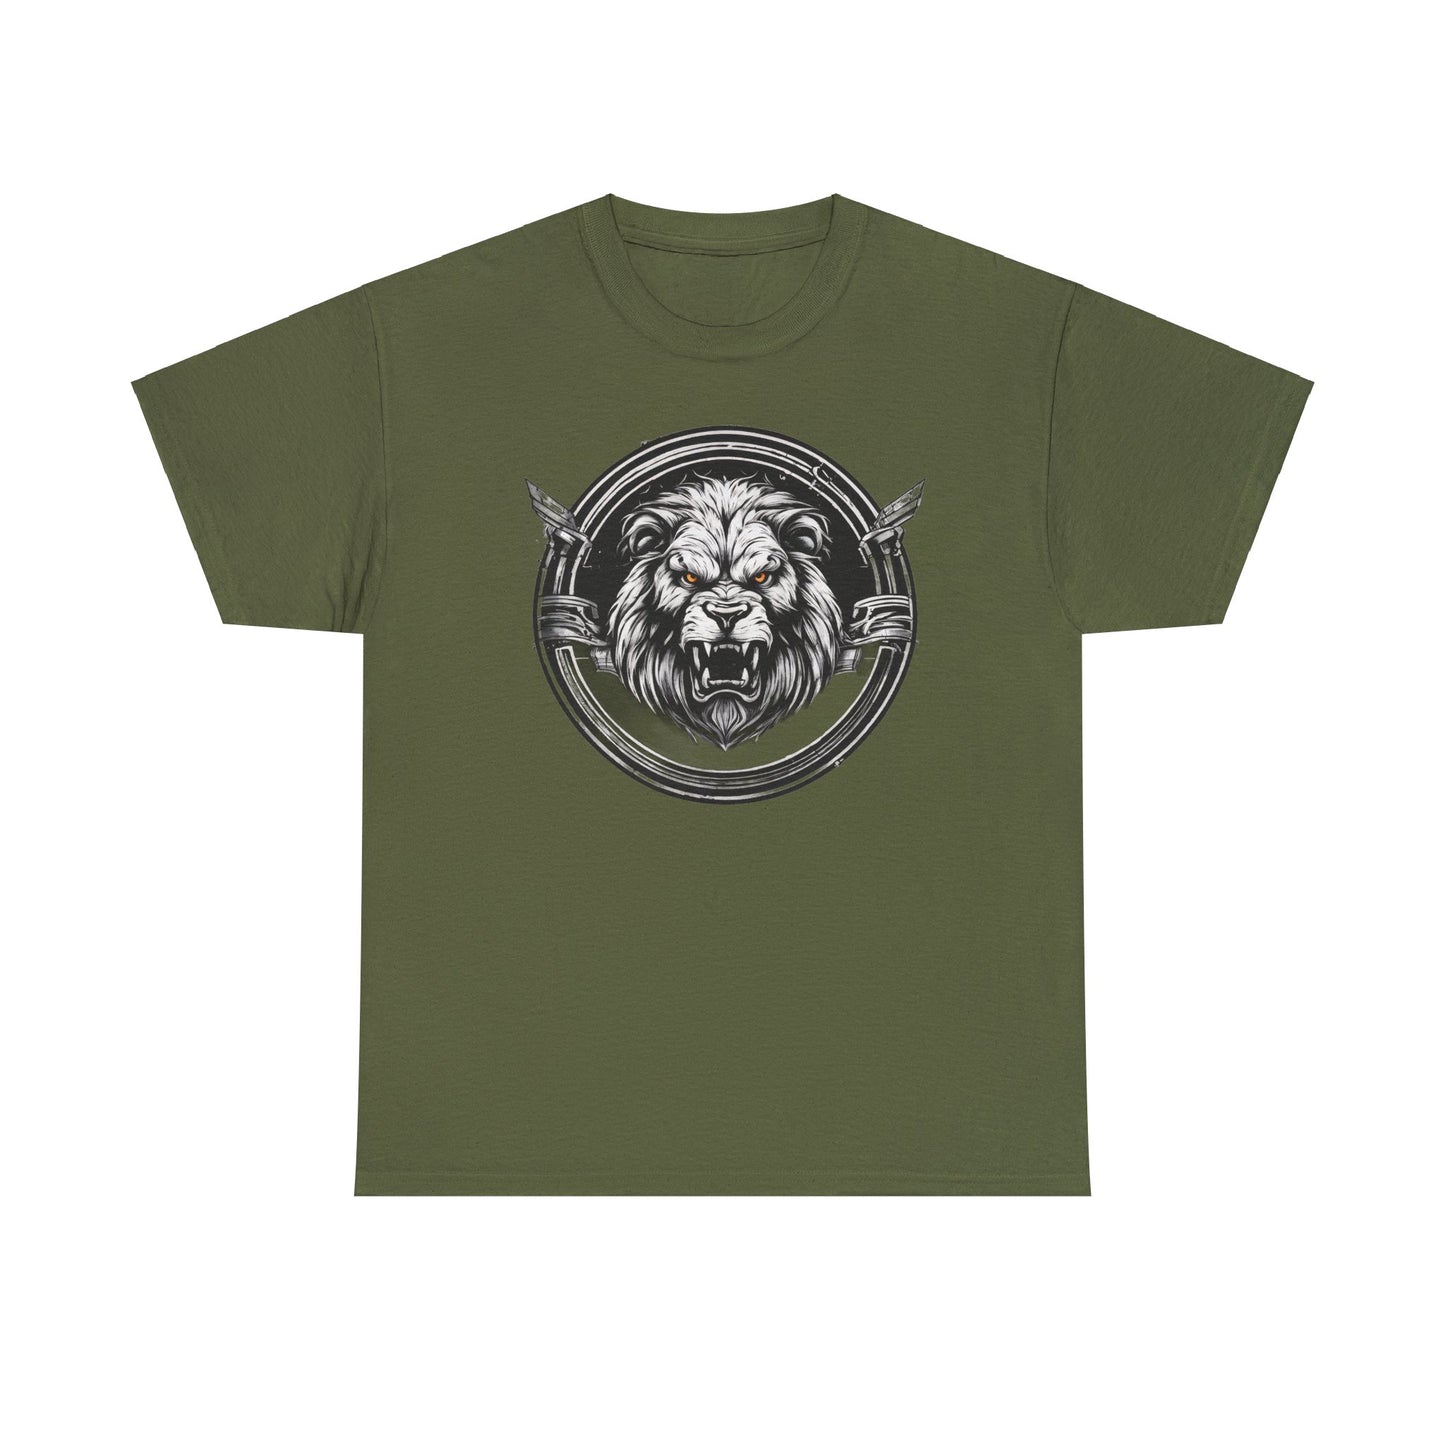 Circle Lion Military Green Unisex Heavy Cotton T-Shirt - Articalist.com